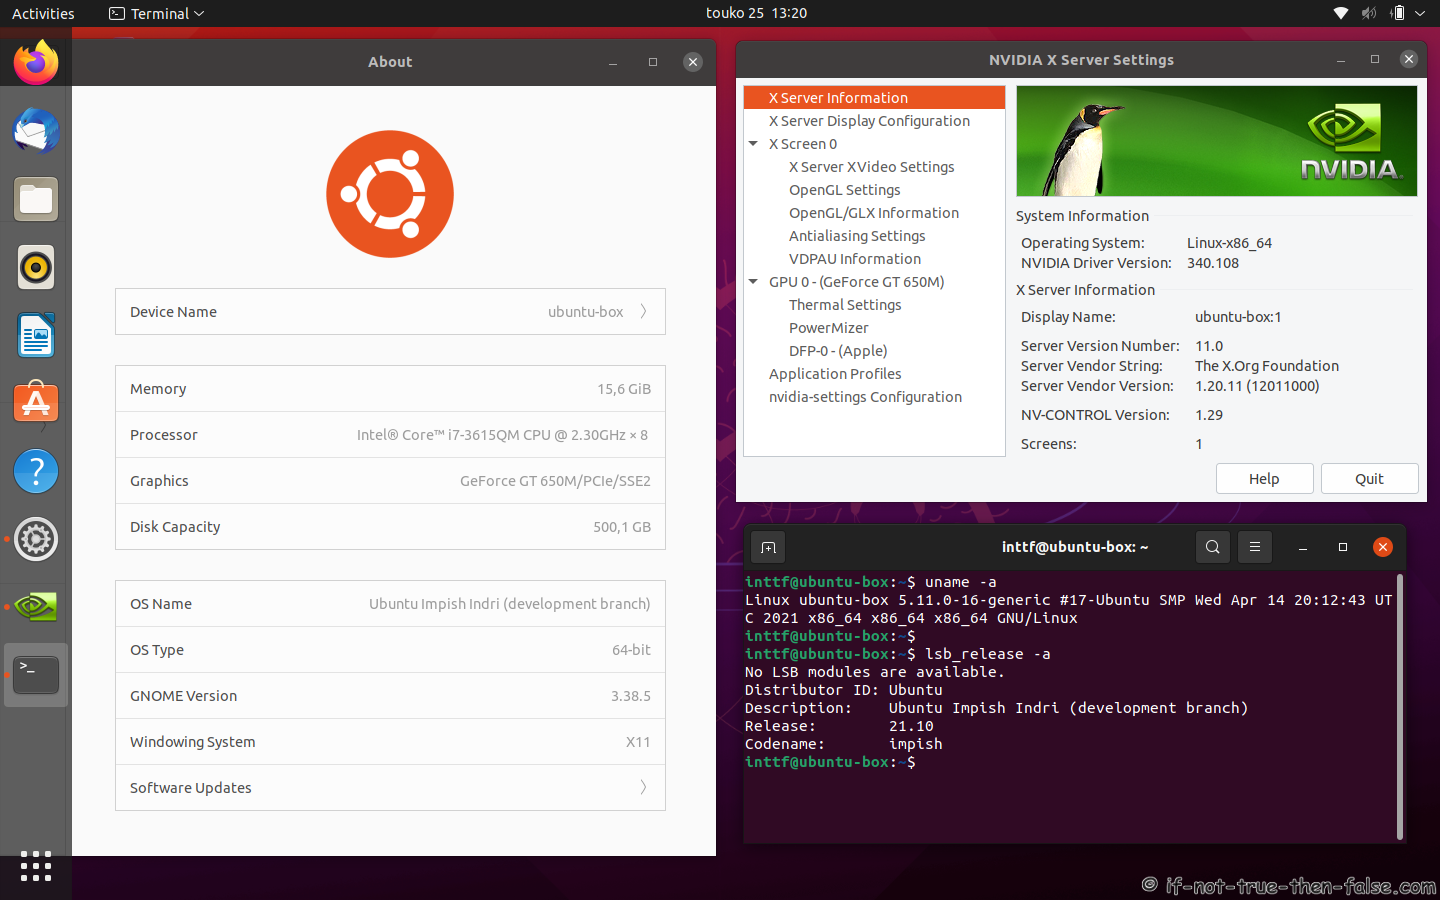 NVIDIA 340.108 Running on Ubuntu 21.10 Kernel 5.11 Gnome 3.38.5